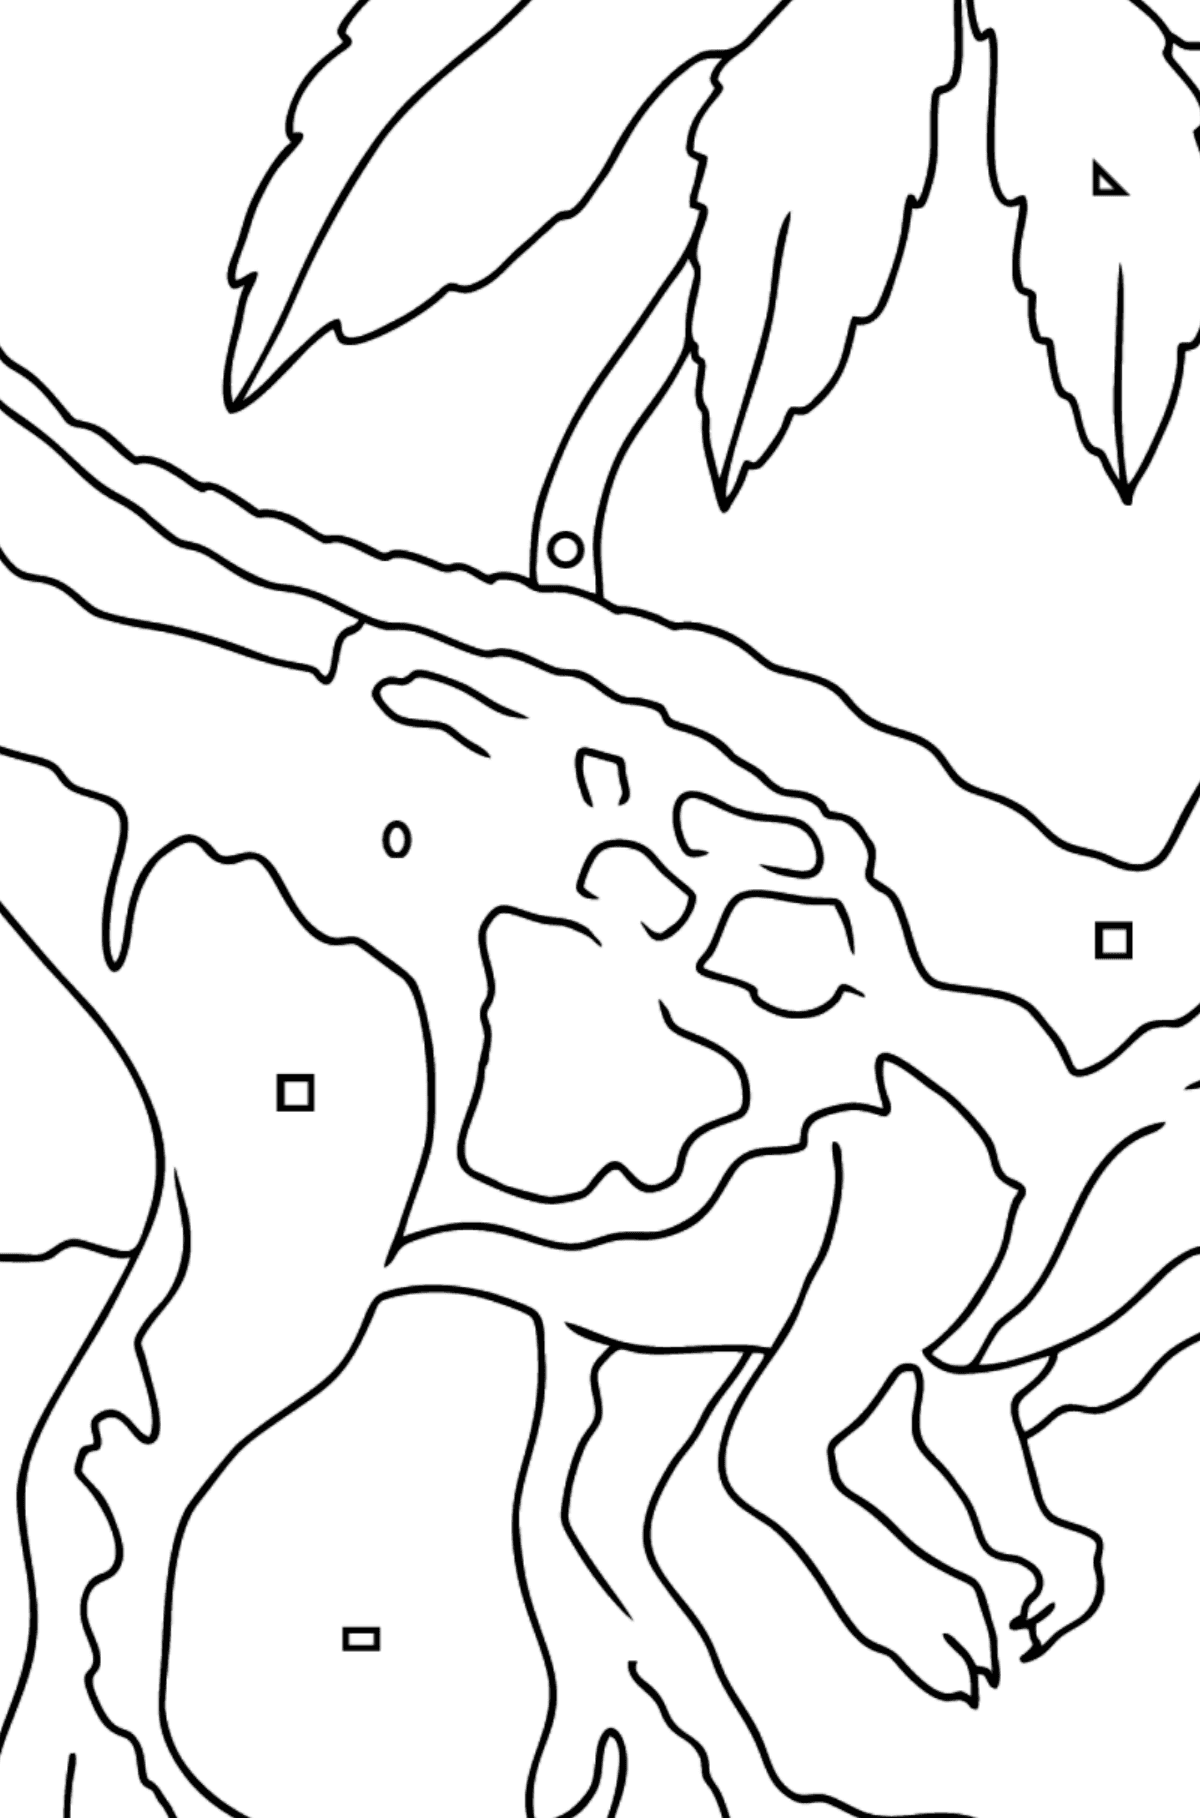 Tegning til fargelegging tyrannosaurus rovdyr (enkelt) - Fargelegge etter geometriske former for barn